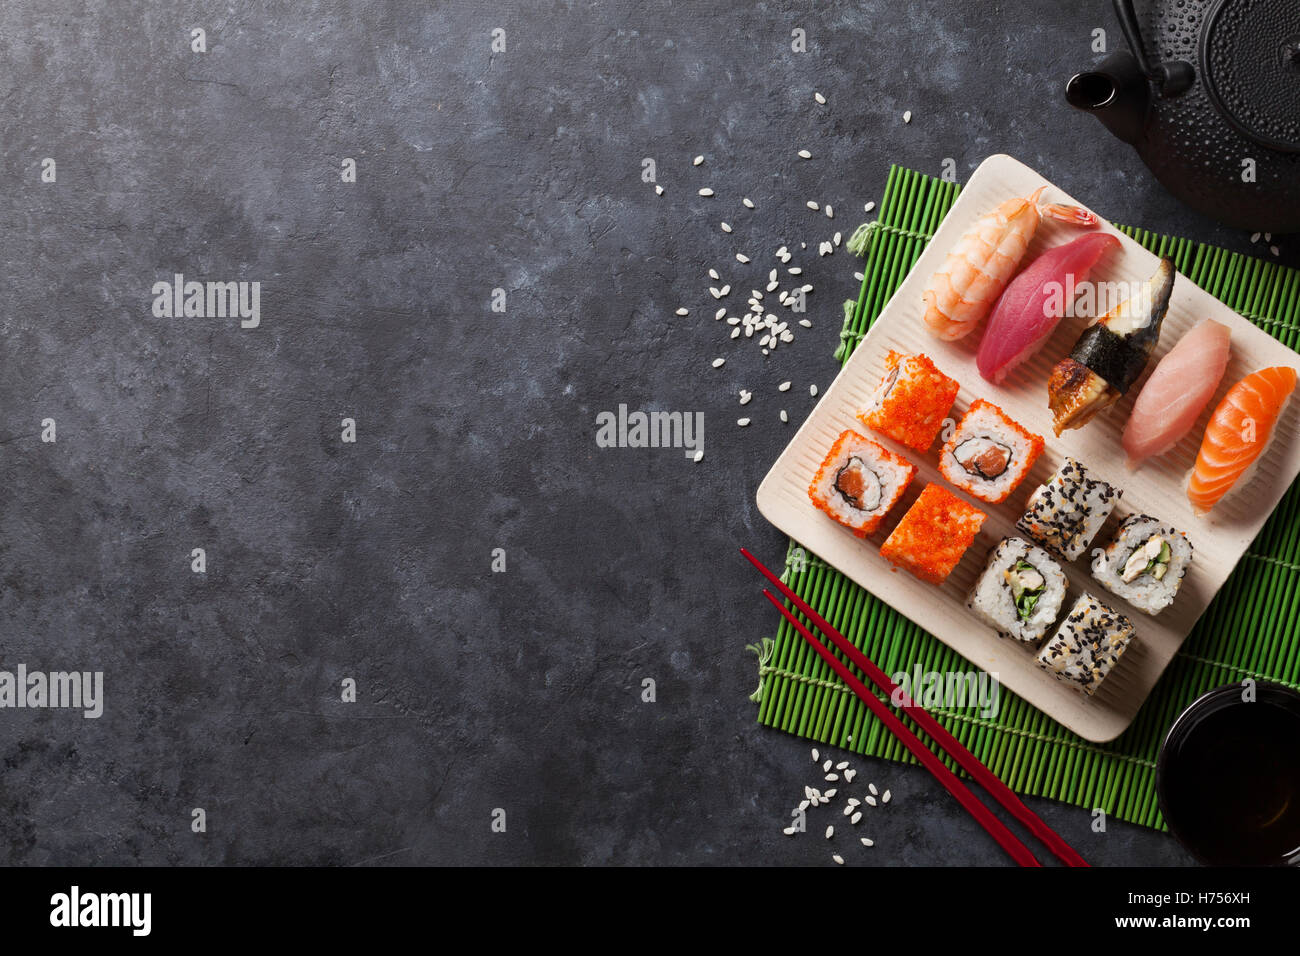 Ensemble de sushi, maki et thé vert sur table en pierre. Top View with copy space Banque D'Images